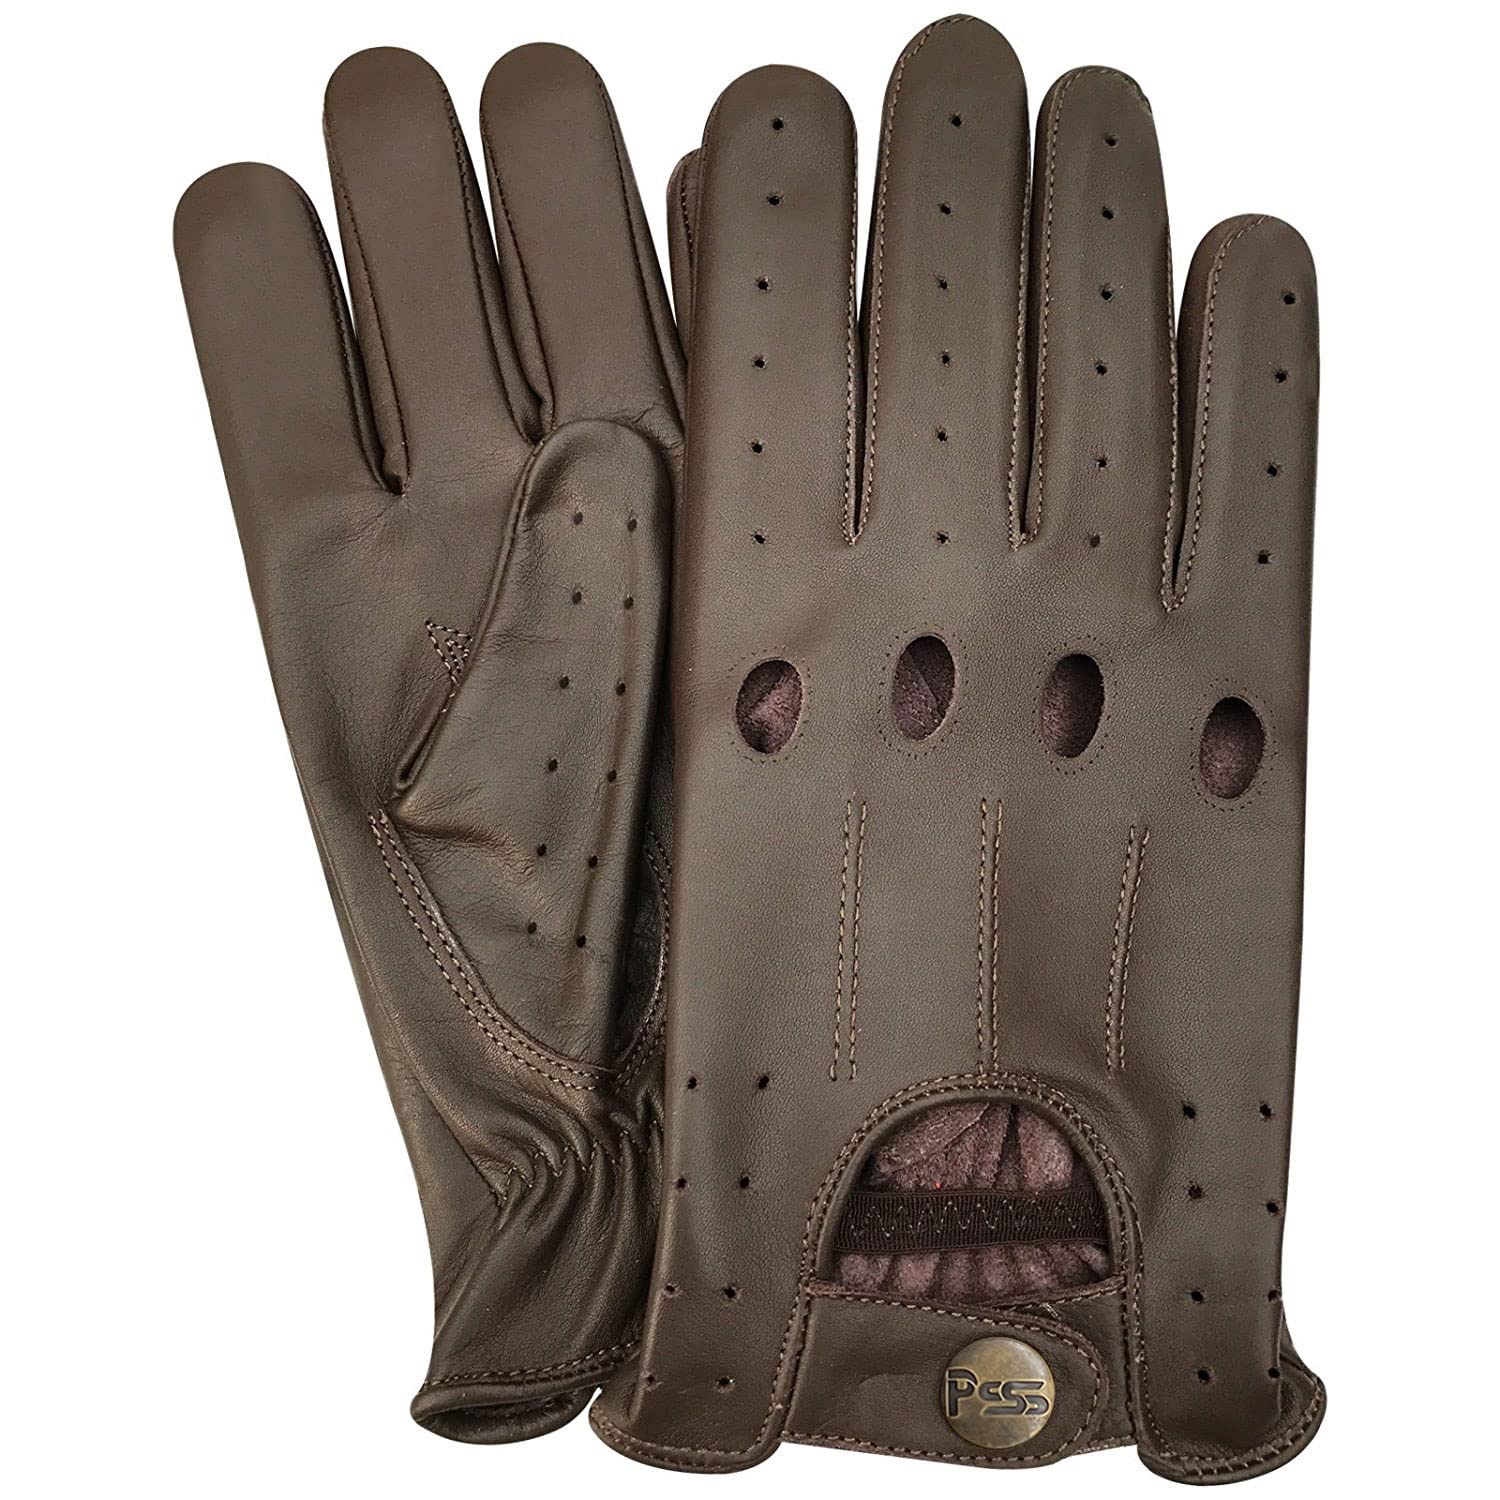 Prime 507 Echtleder-Handschuhe für Herren, qualitativ hochwertig, weich, ohne Futter, zum Autofahren, Retro-Stil, in 10 Farben erhältlich Gr. onesize, braun